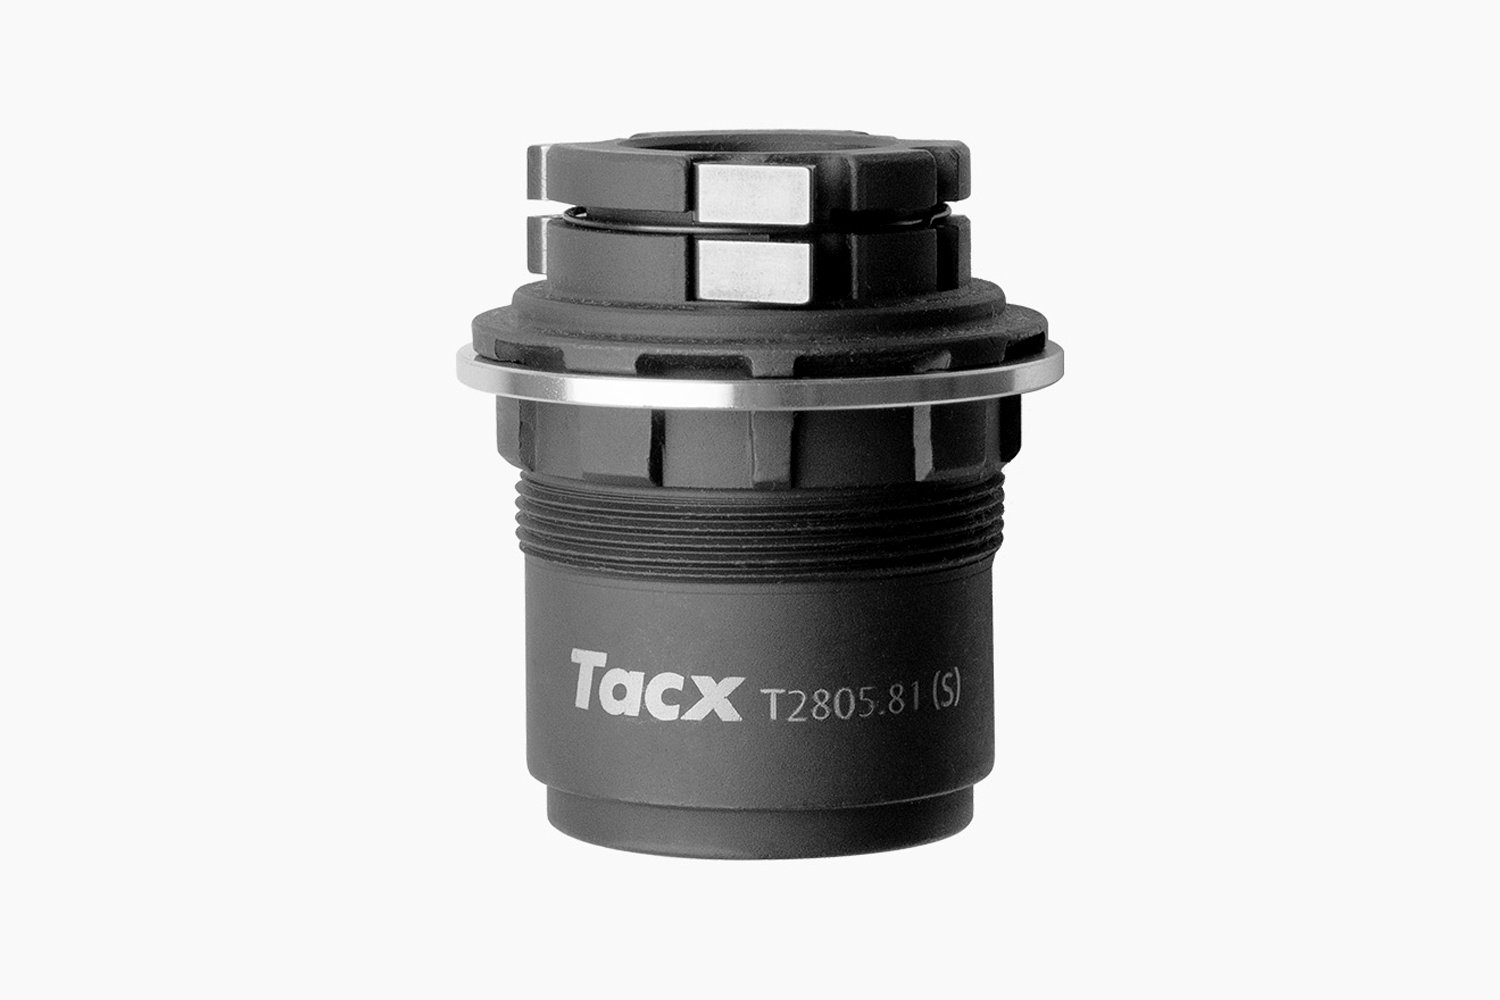 Запчасти для втулок Барабан Tacx для кассеты SRAM XD-R, для Tacx, T2805.81